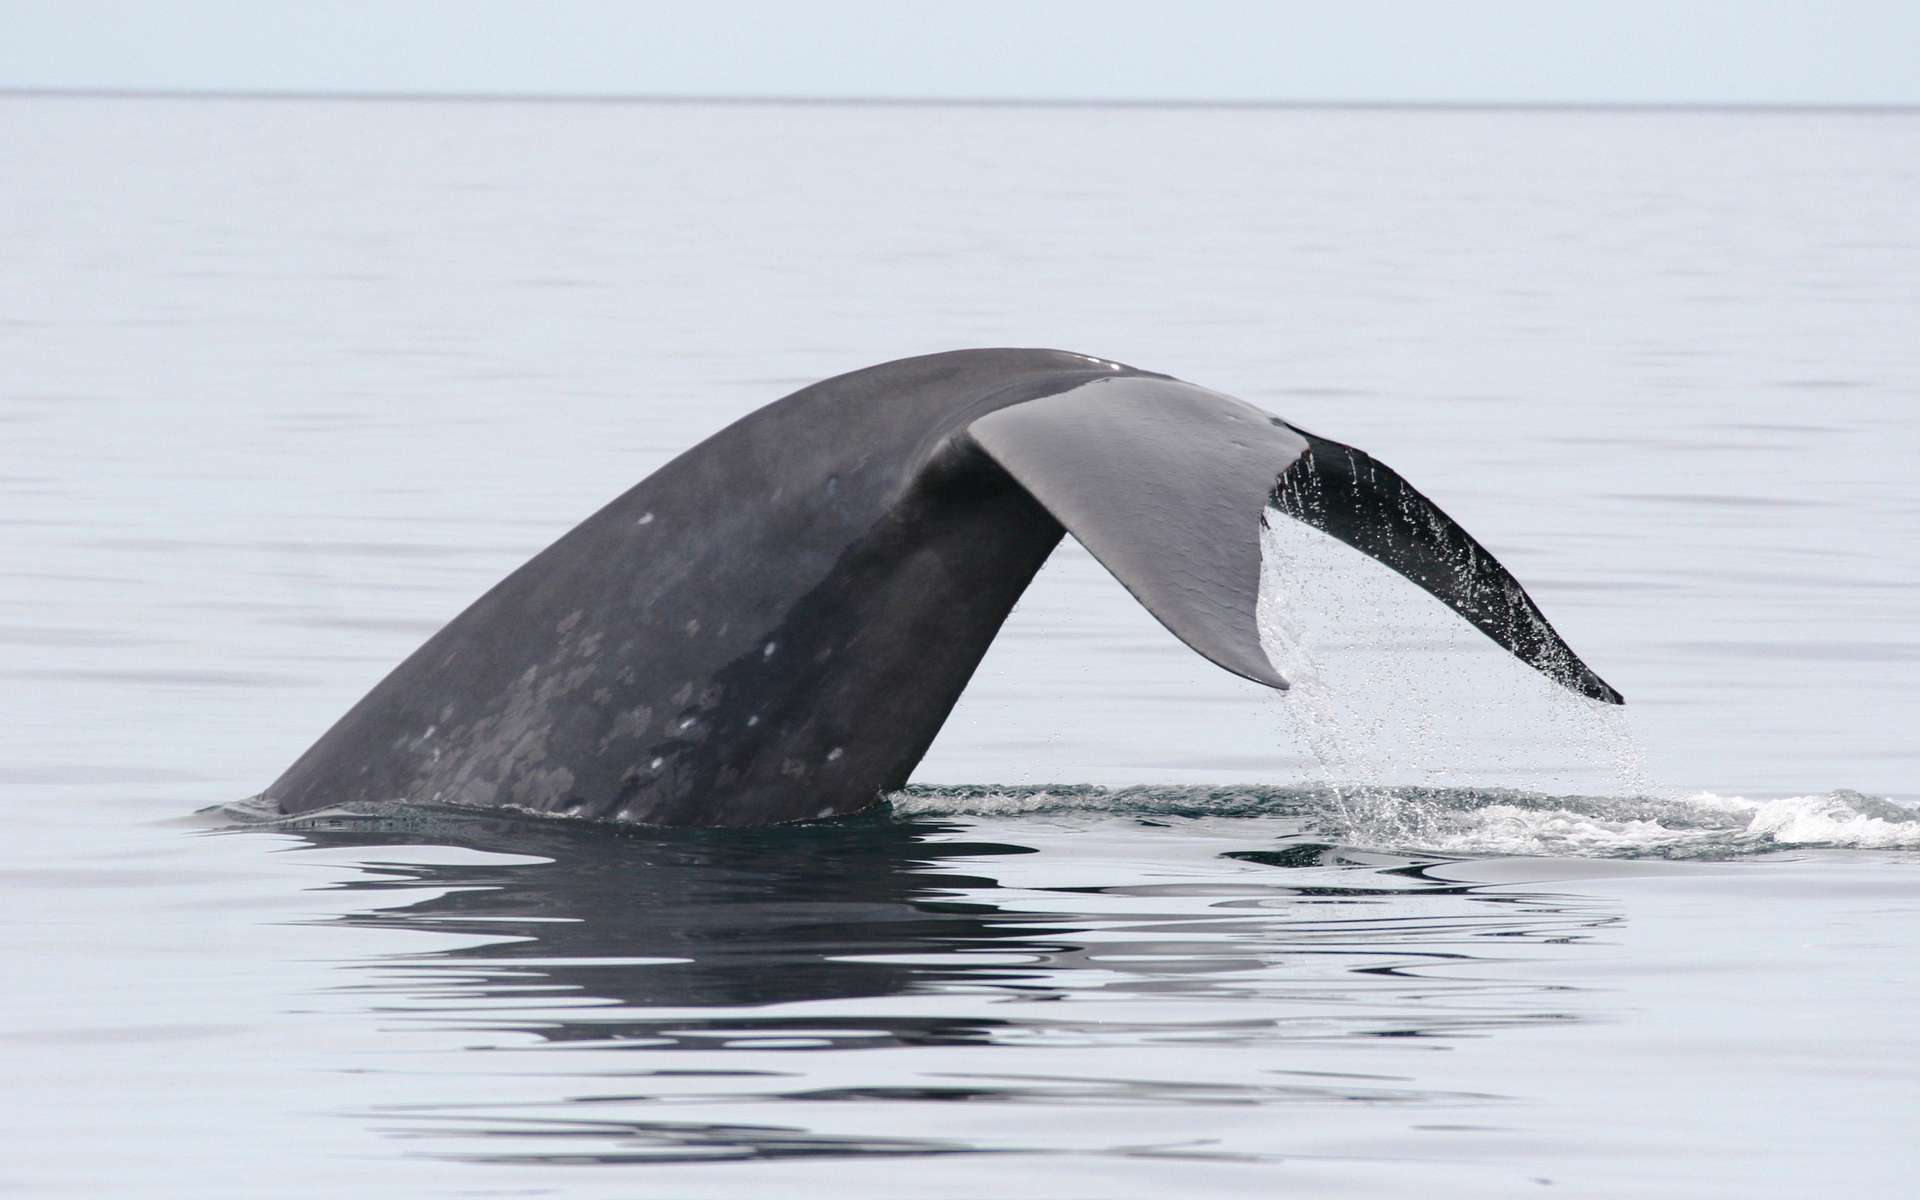 Pouvant dépasser 30 m de long, les baleines bleues sont des mystycètes, car elles possèdent des fanons. Parmi les trois sous-espèces, celle présente dans le Pacifique nord et l'Atlantique nord se nomme Balaenoptera musculus musculus. Comme d'autres cétacés, elle craint les coups de soleil et s'en protège en assombrissant leur peau grâce à un pigment. © Diane Gendron